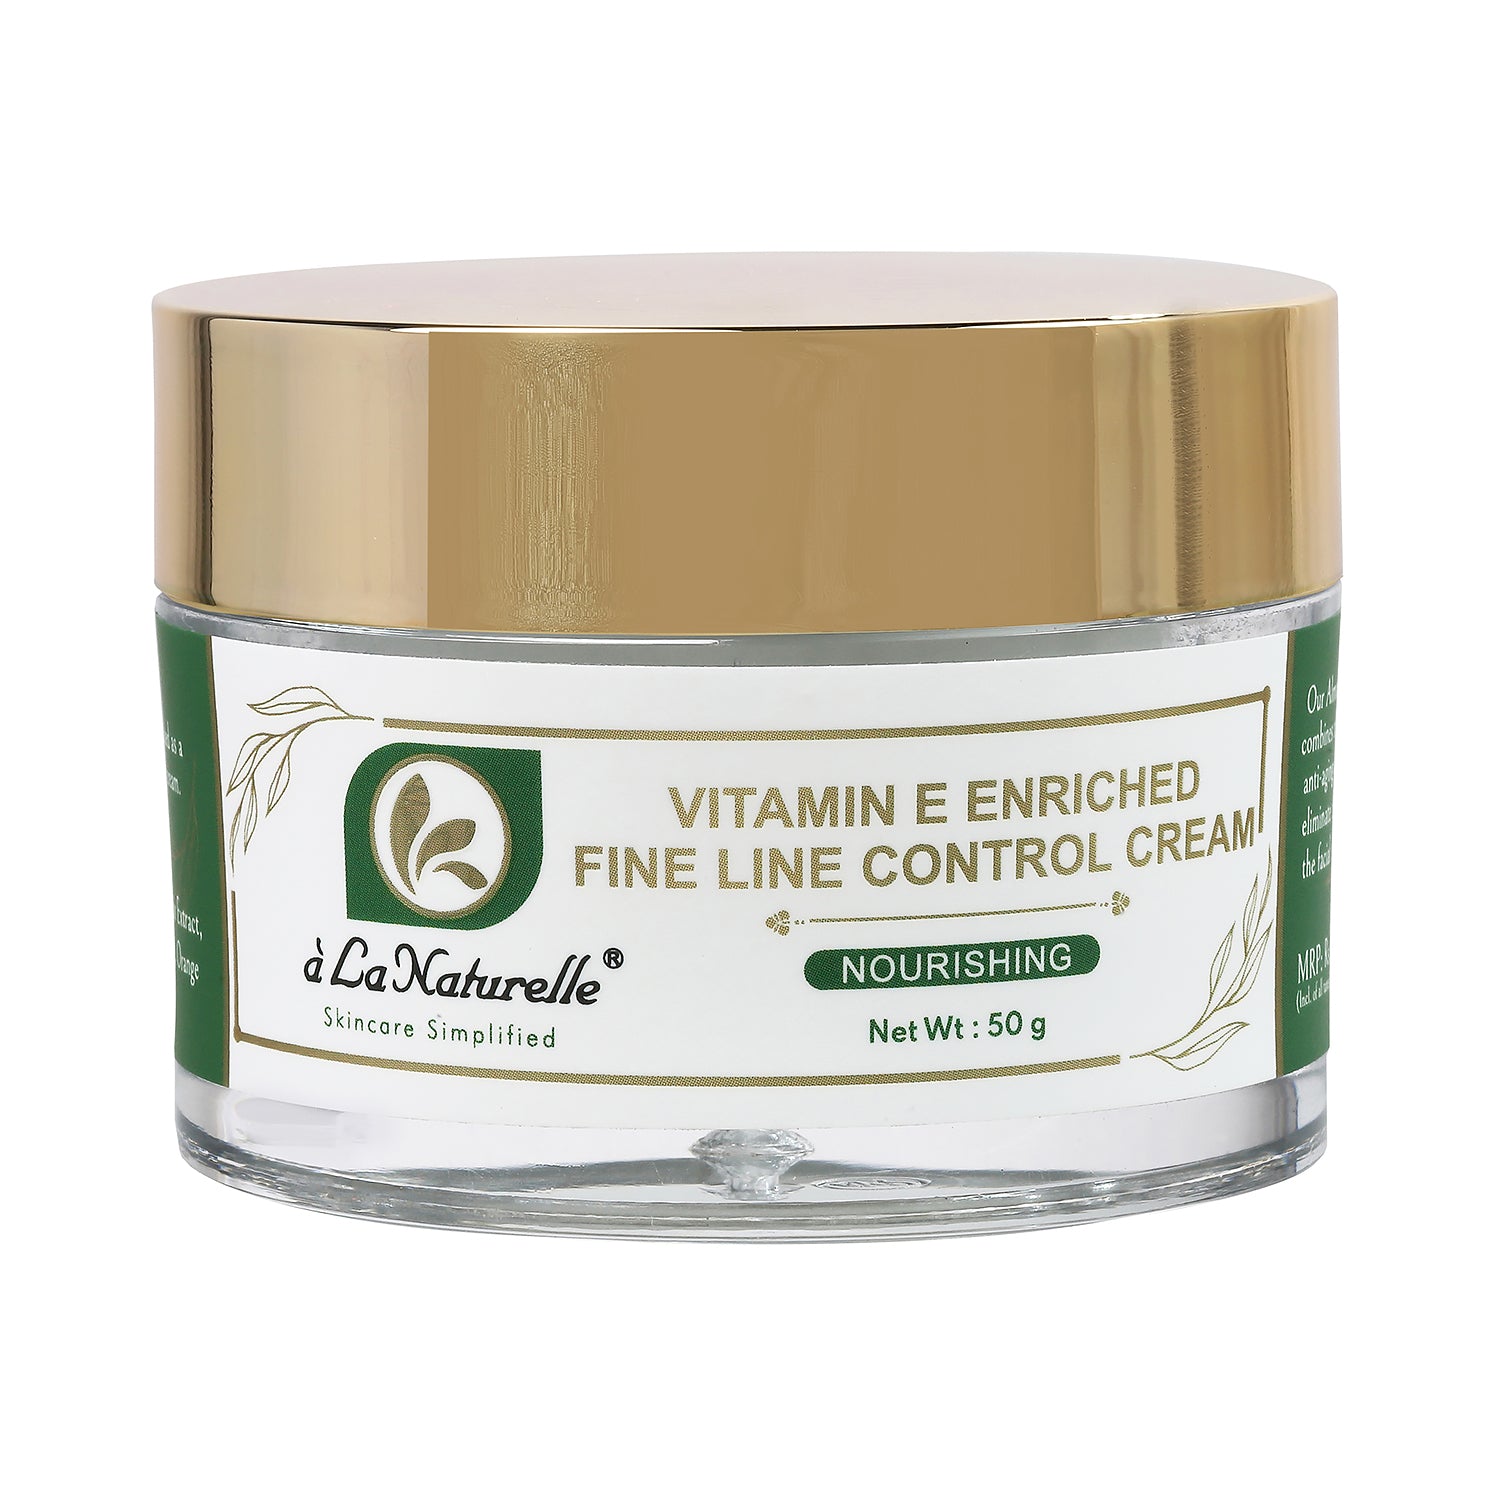 Vitamin E enriched Fine Line Control Cream